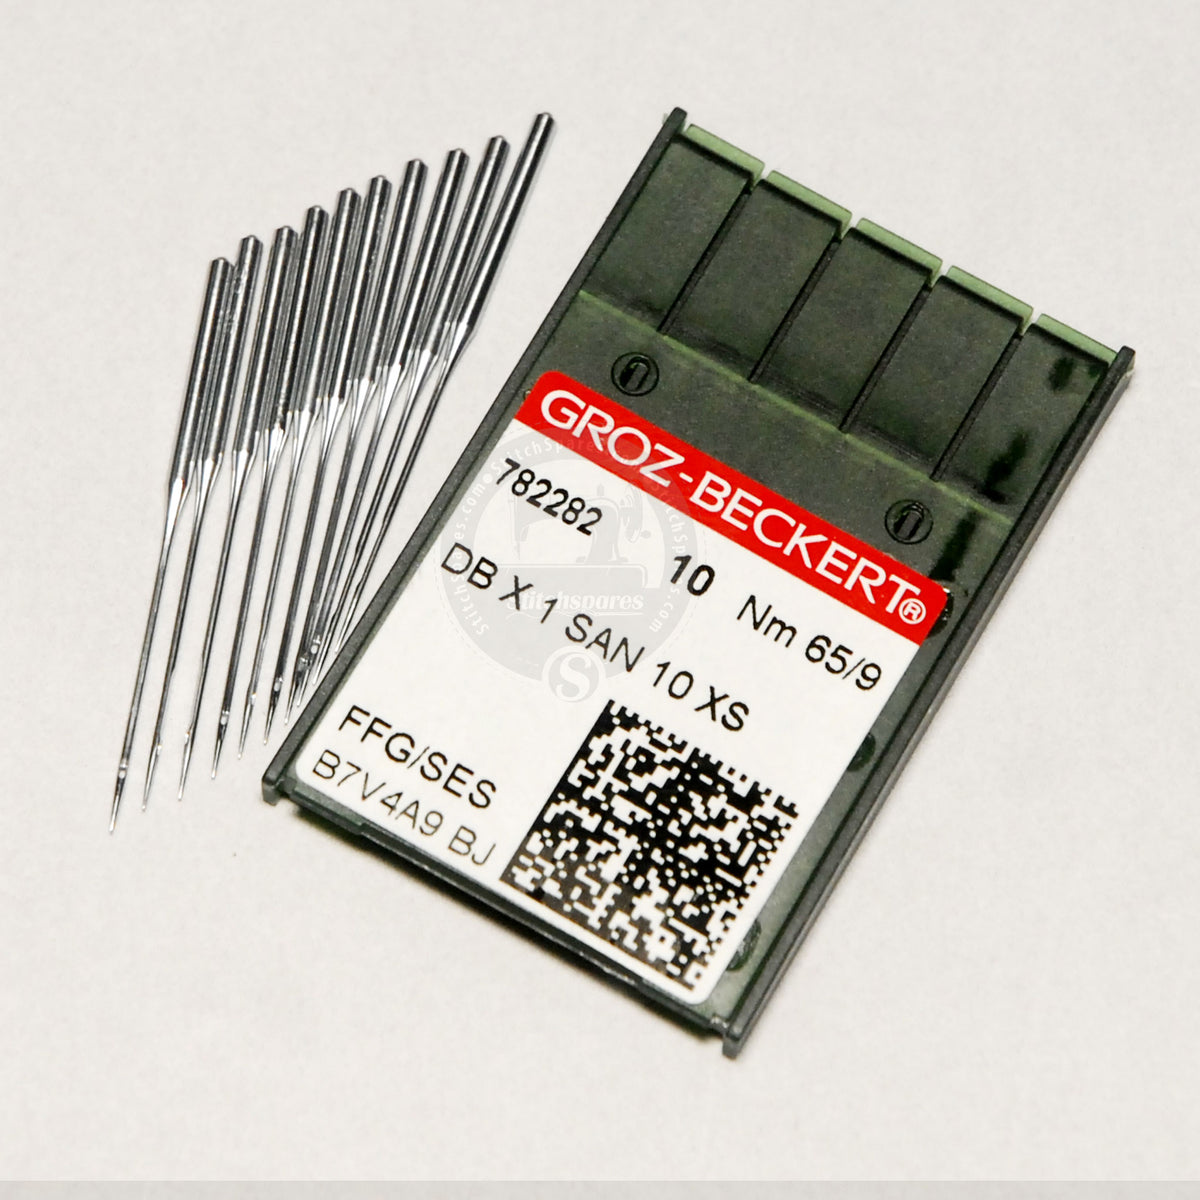 (100 Pcs) Groz Beckert Needle DBX1 SAN 10 XS FFG